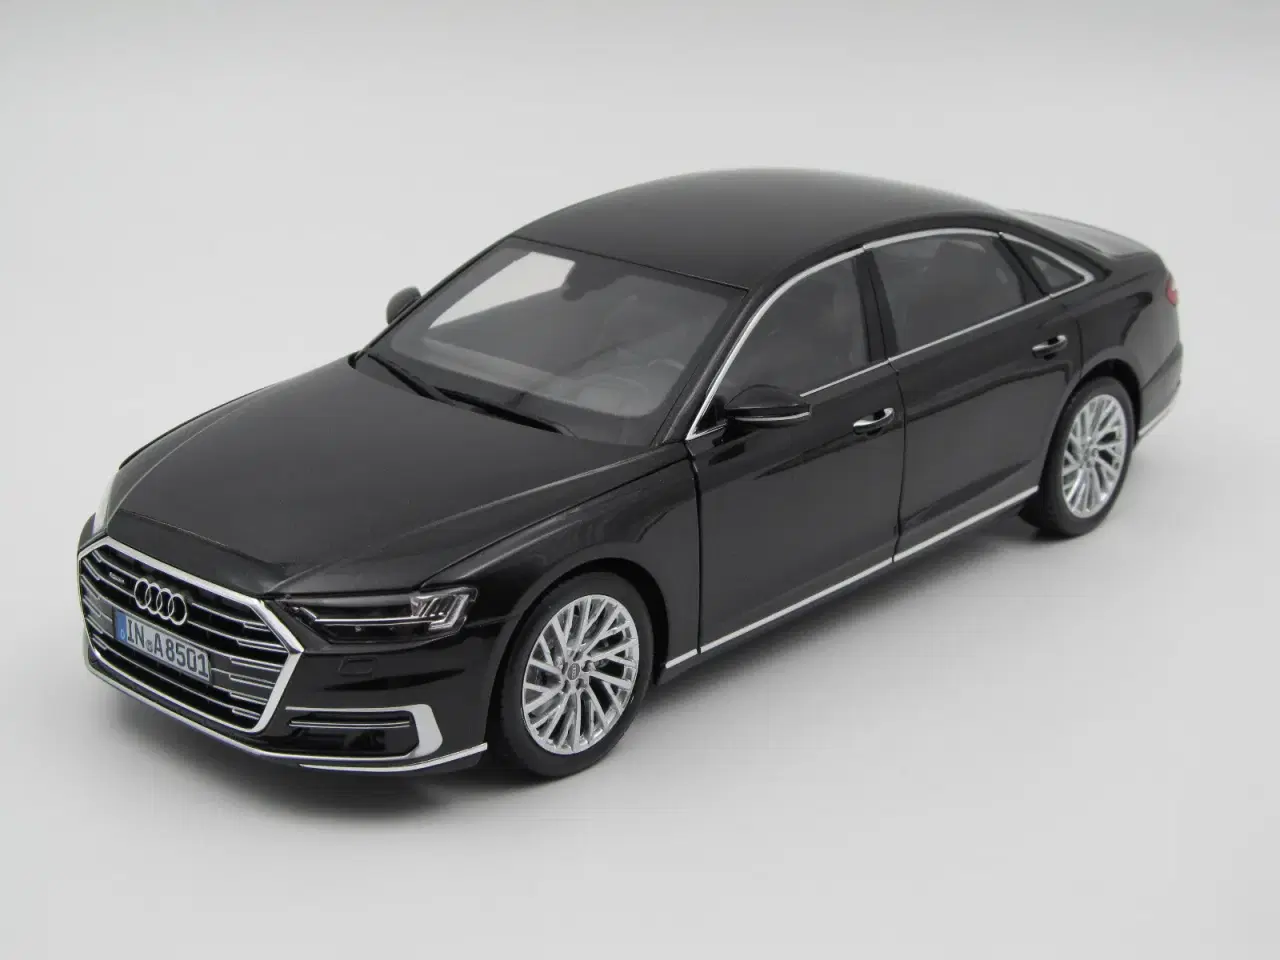 Billede 1 - 2018 Audi A8L Dealer Edition - 1:18